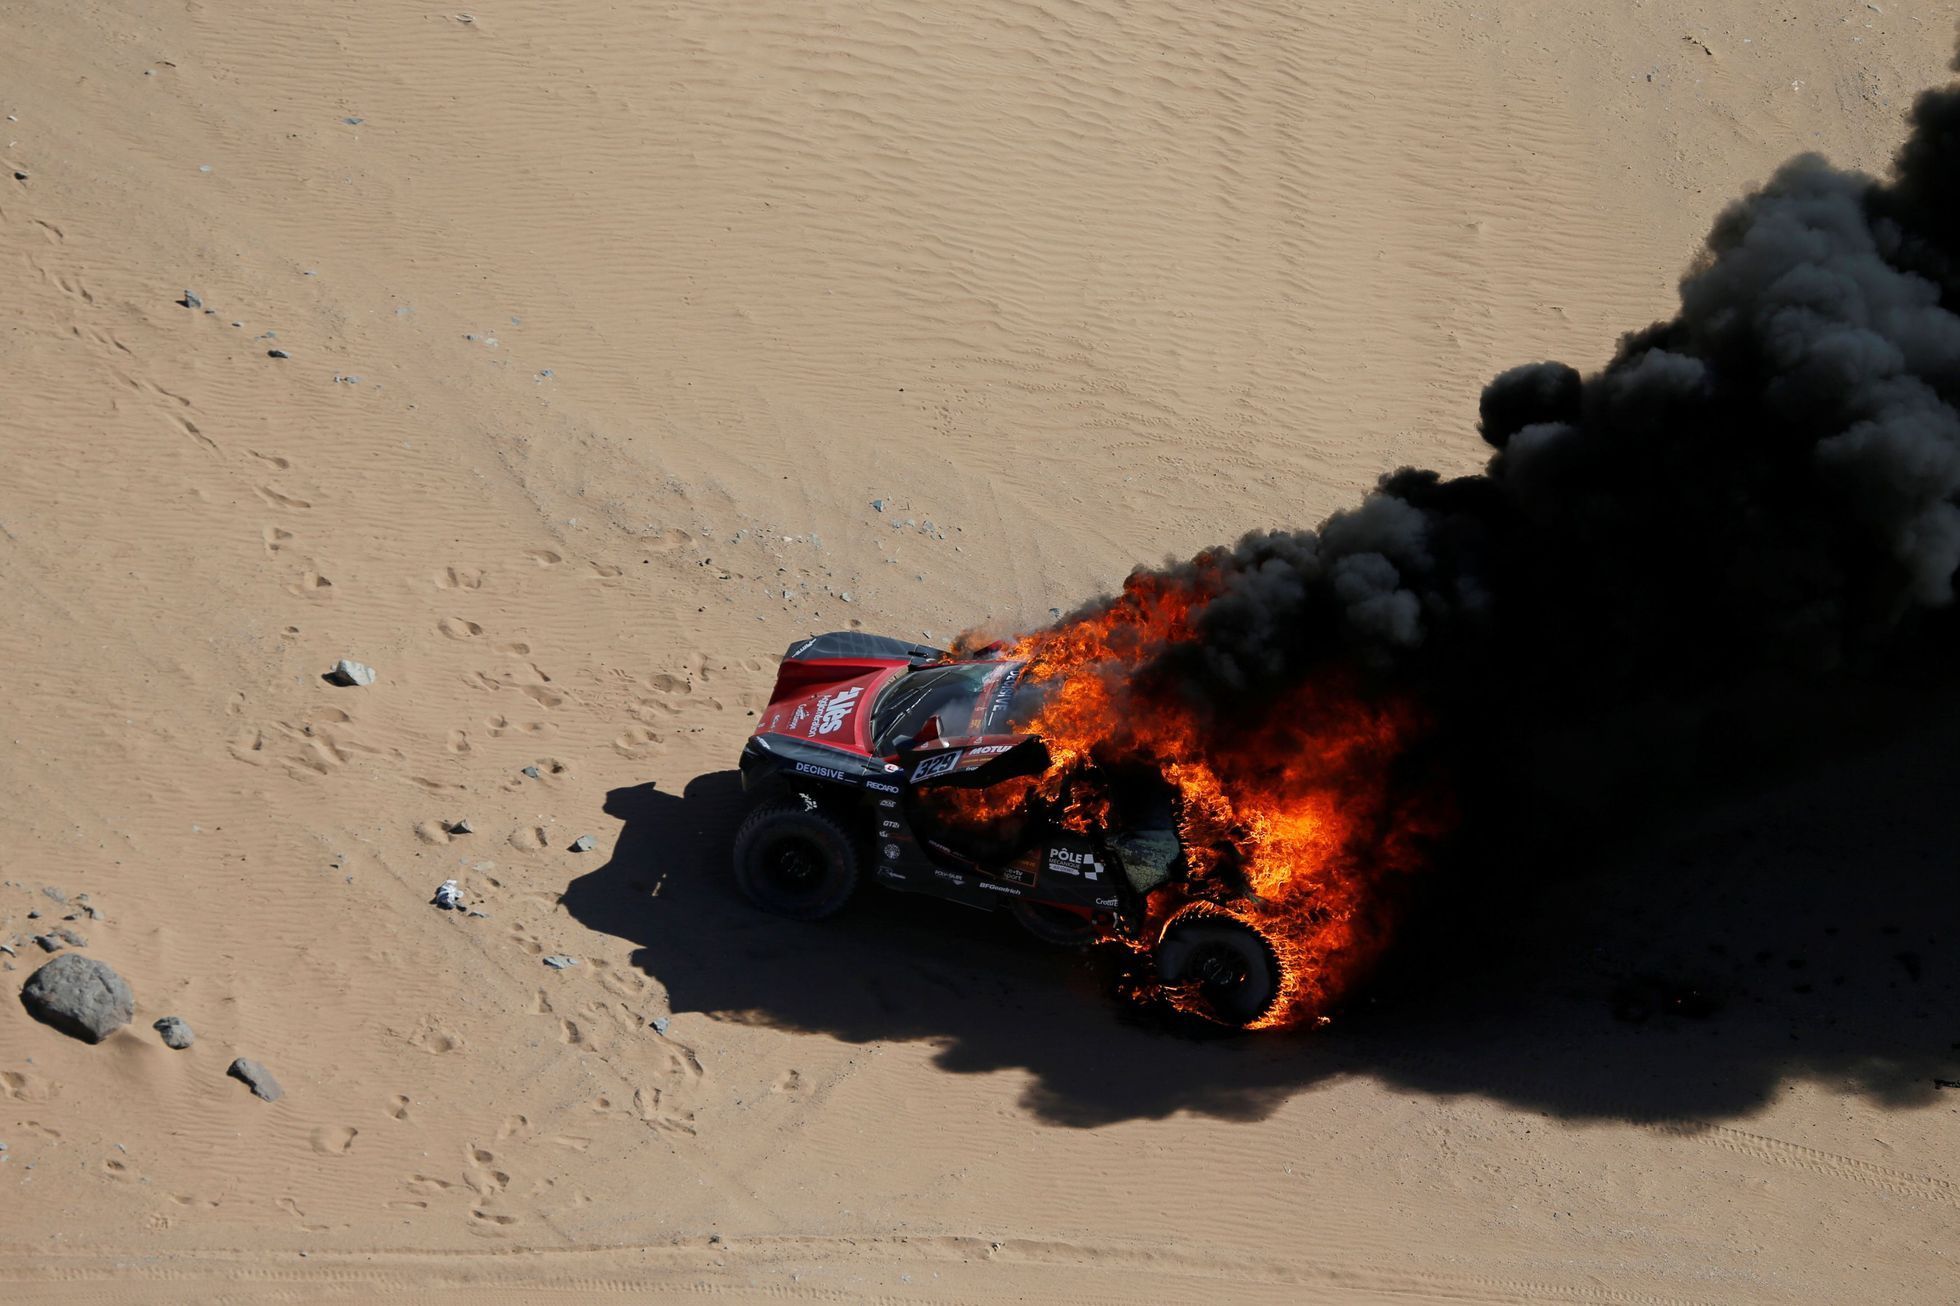 Hořící speciál RD Limited francouzského pilota Romaina Dumase v 1. etapě Rallye Dakar 2020.